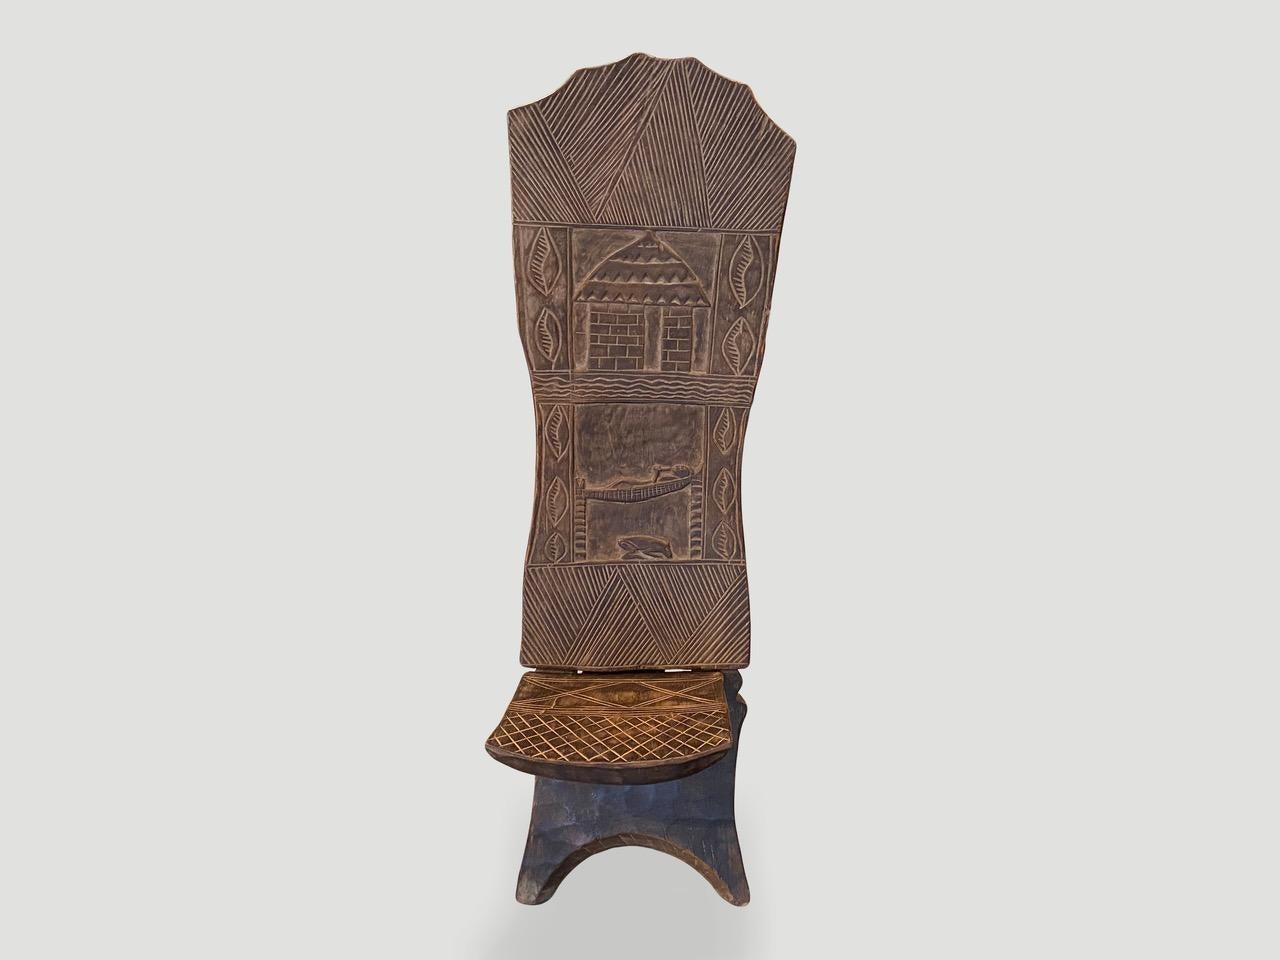 Seltener antiker afrikanischer handgeschnitzter Stuhl. Schöne Patina auf der Rückenlehne aus einfachem Holz, mit mehreren Motiven. Dieser Klappstuhl ist aus einem einzigen Stück ébéniste-Holz aus Westafrika gefertigt. Der Palaverstuhl, auch